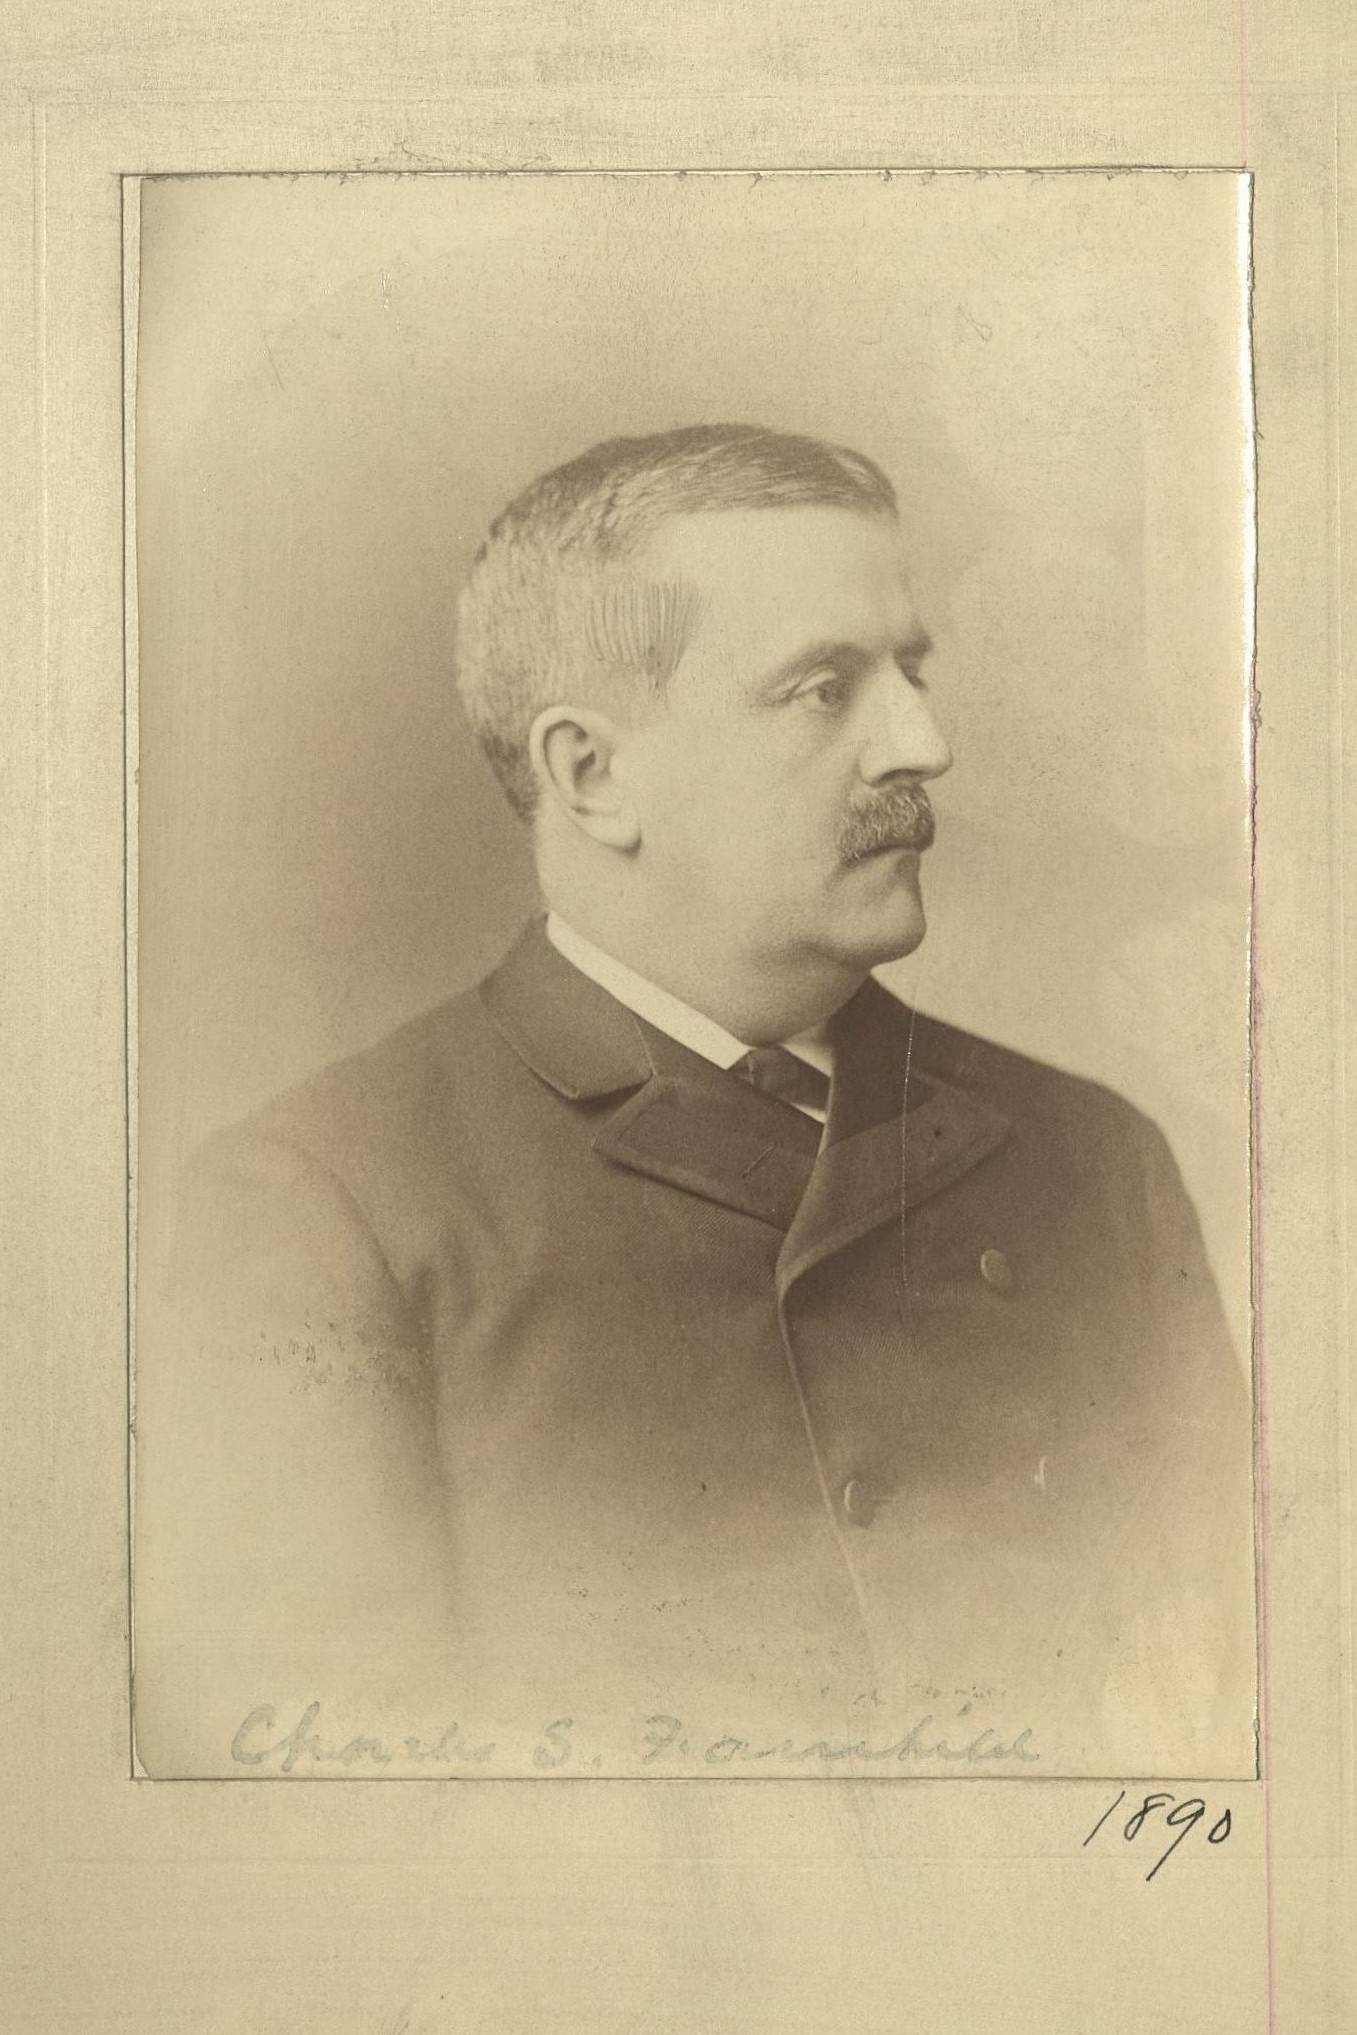 Member portrait of Charles S. Fairchild